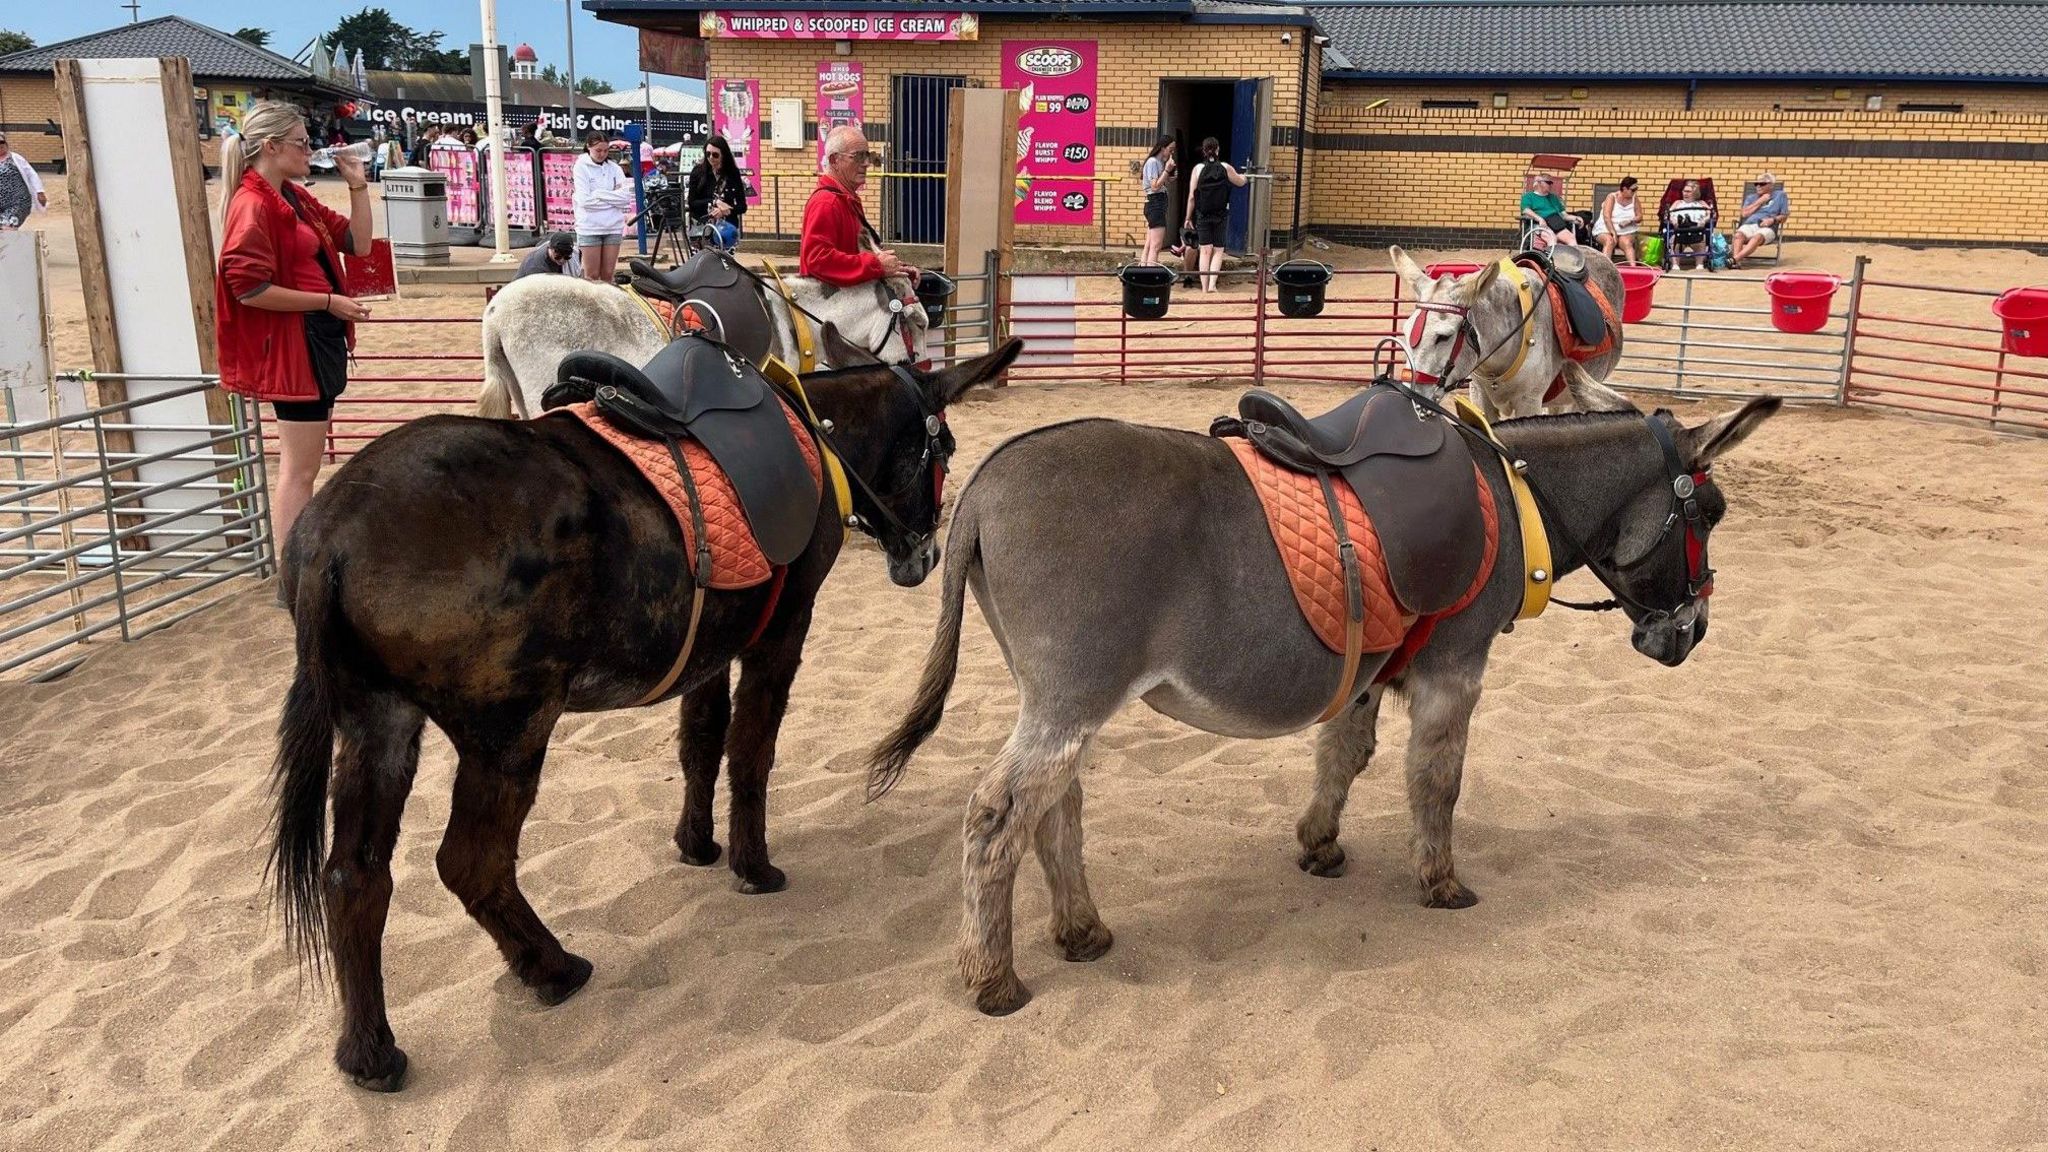 Several donkeys on the sand at Skegness